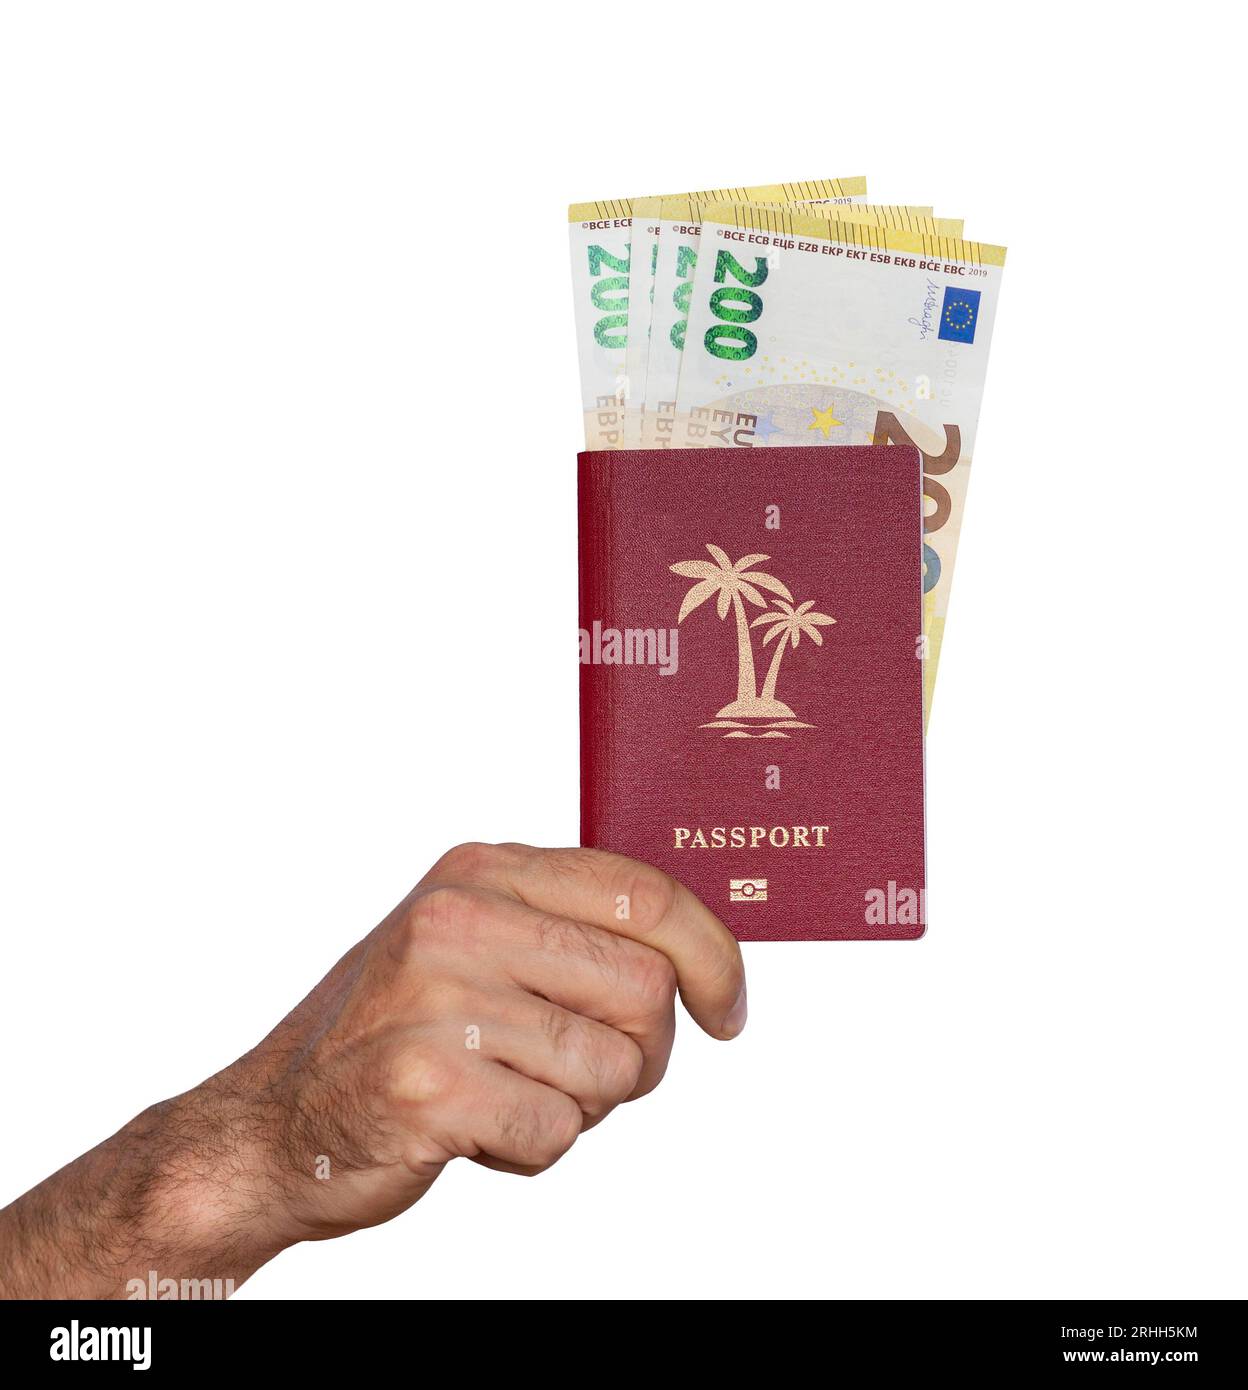 Passaporto isolato in mano su banconote bianche da 200 euro e palme illustrate sulla copertina del passaporto Foto Stock